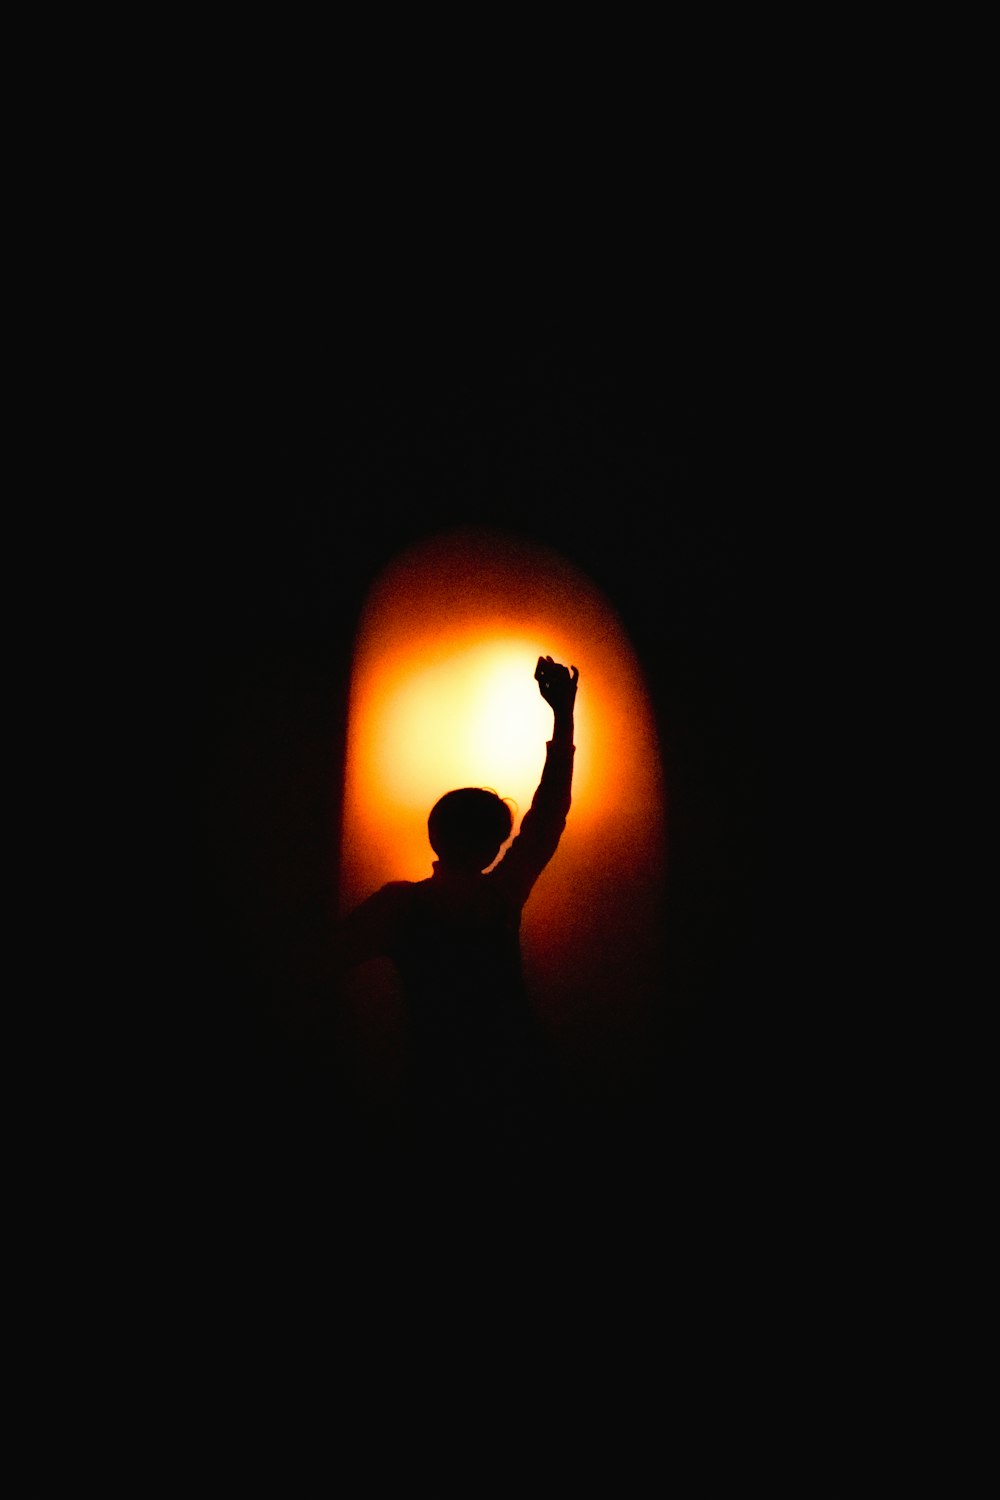 la silhouette d’une personne levant le bras dans le noir